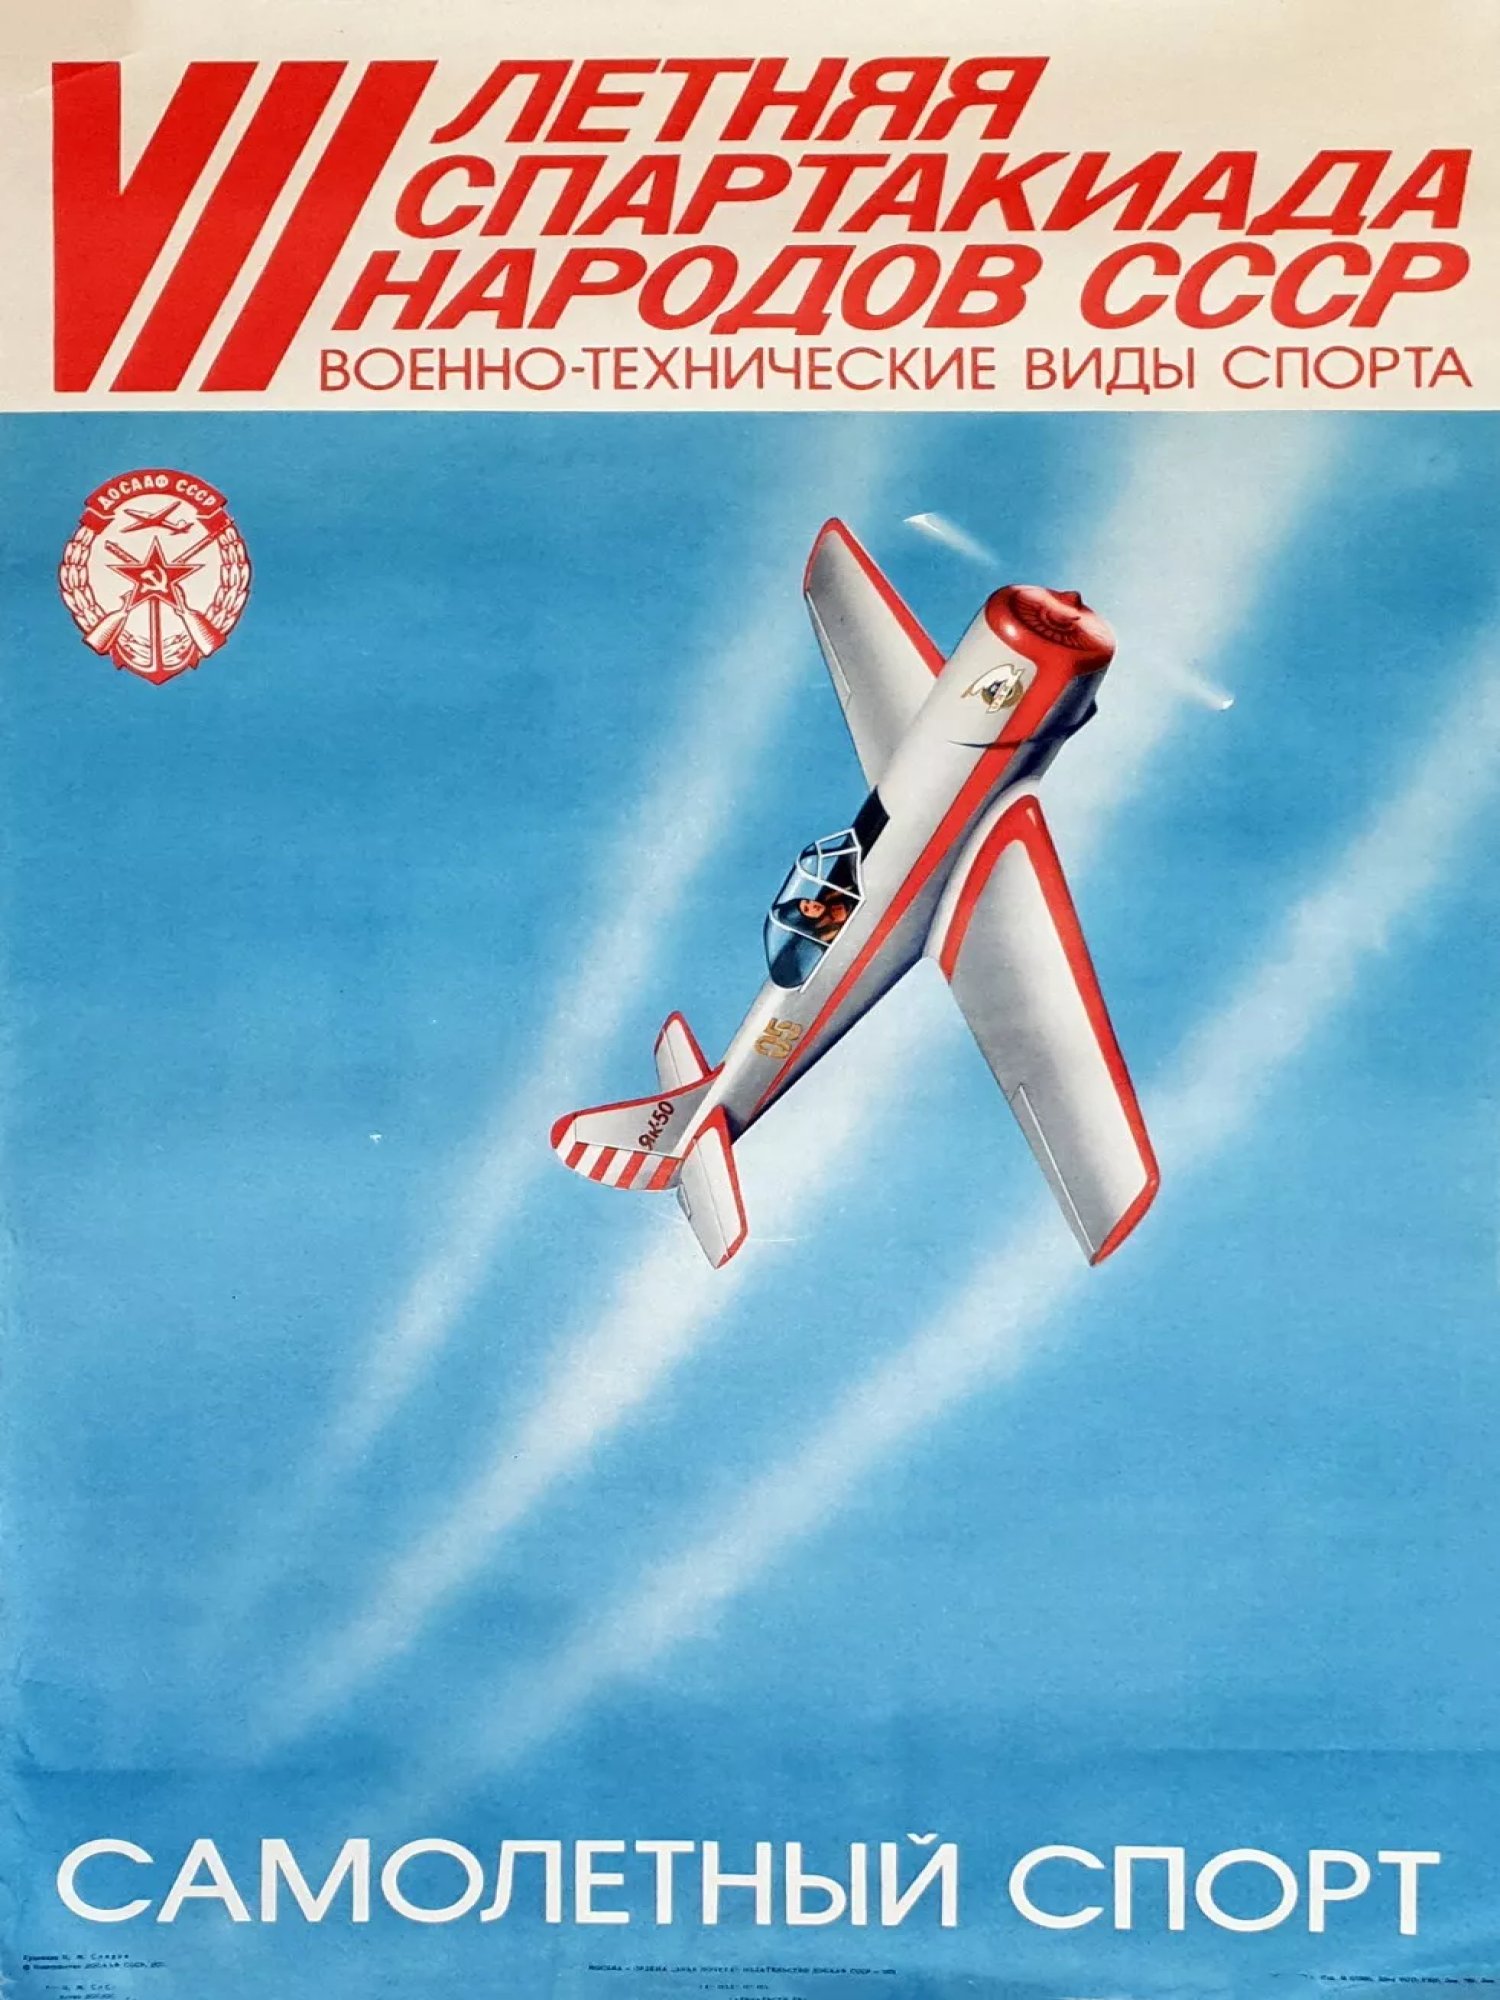 RUSSIAN SOVIET USSR PROPAGANDA POSTER 1978 PIC-0